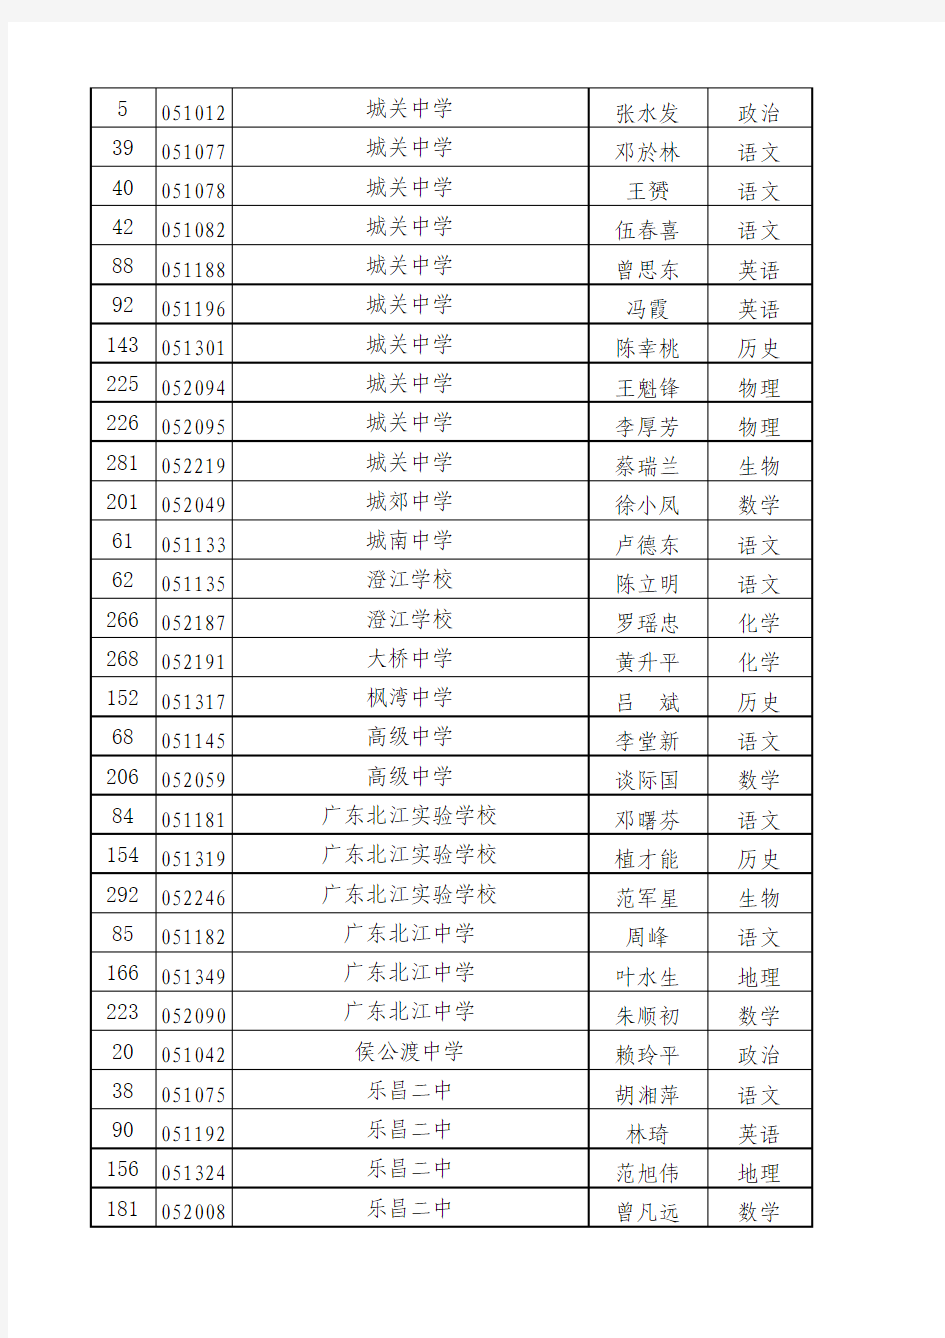 2012广东中学高级职称公示名单